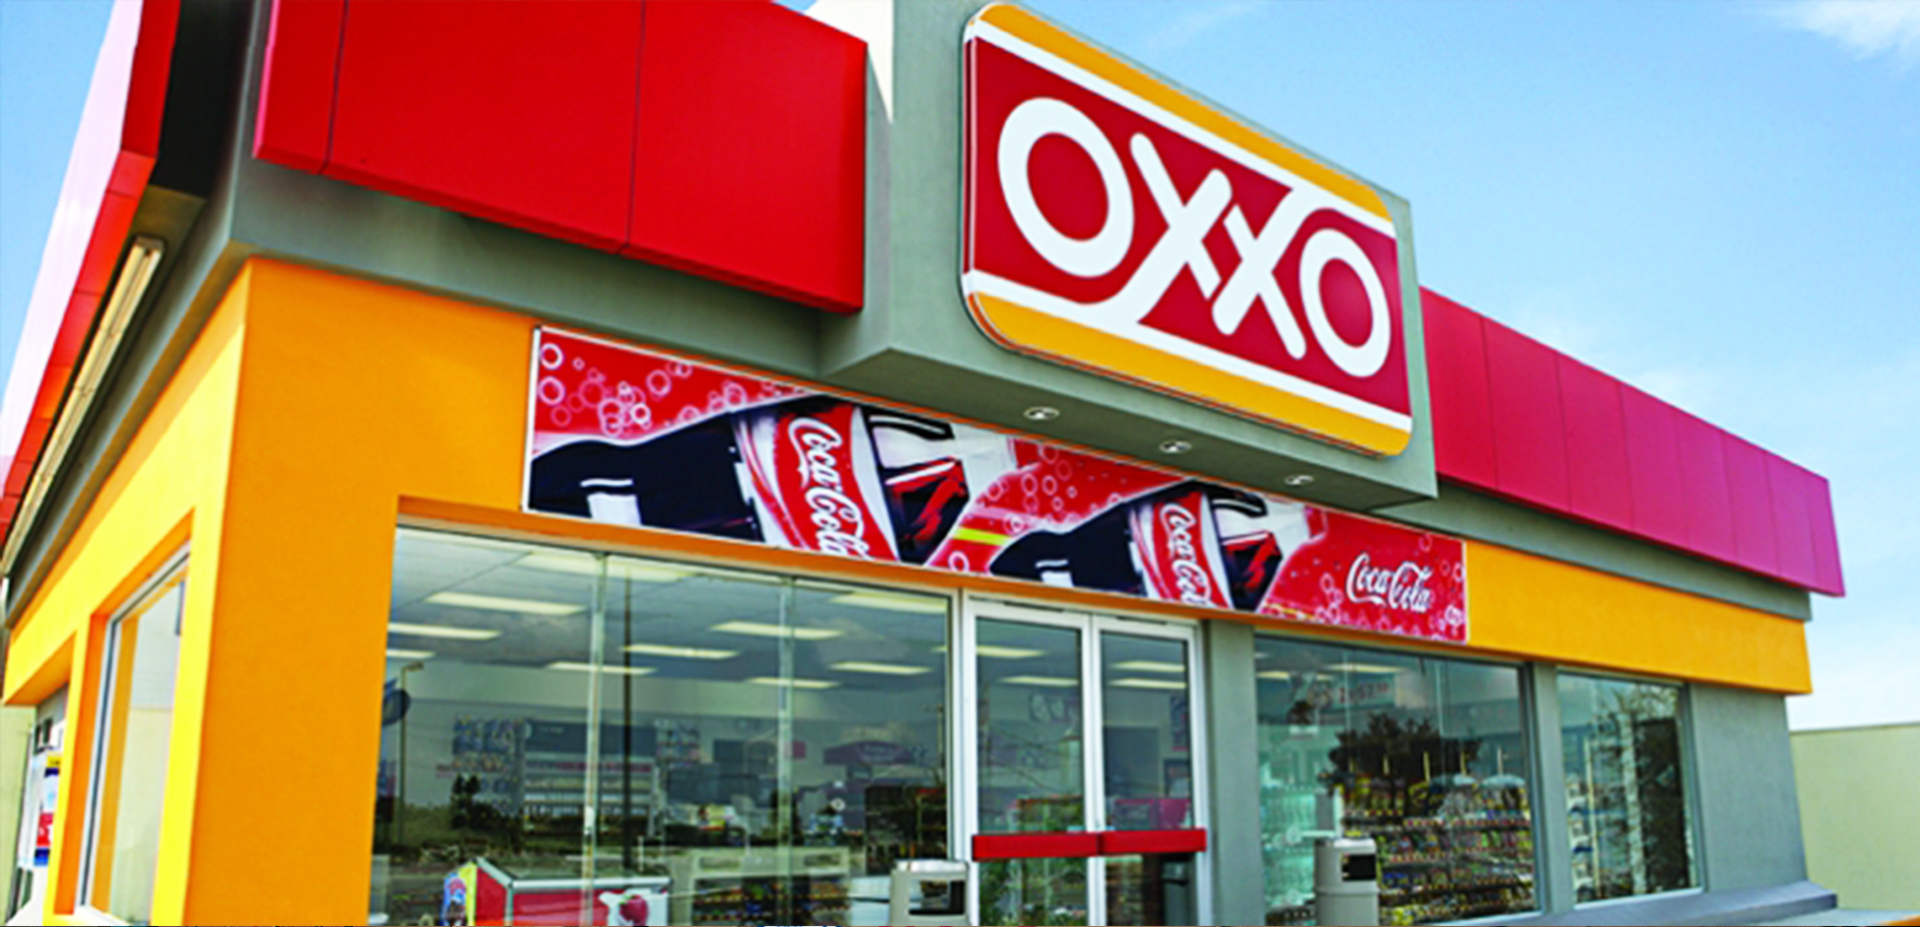 La cadena Oxxo busca abrir para el año 2020 un total de 20.000 locales en el país (Foto: Femsa)